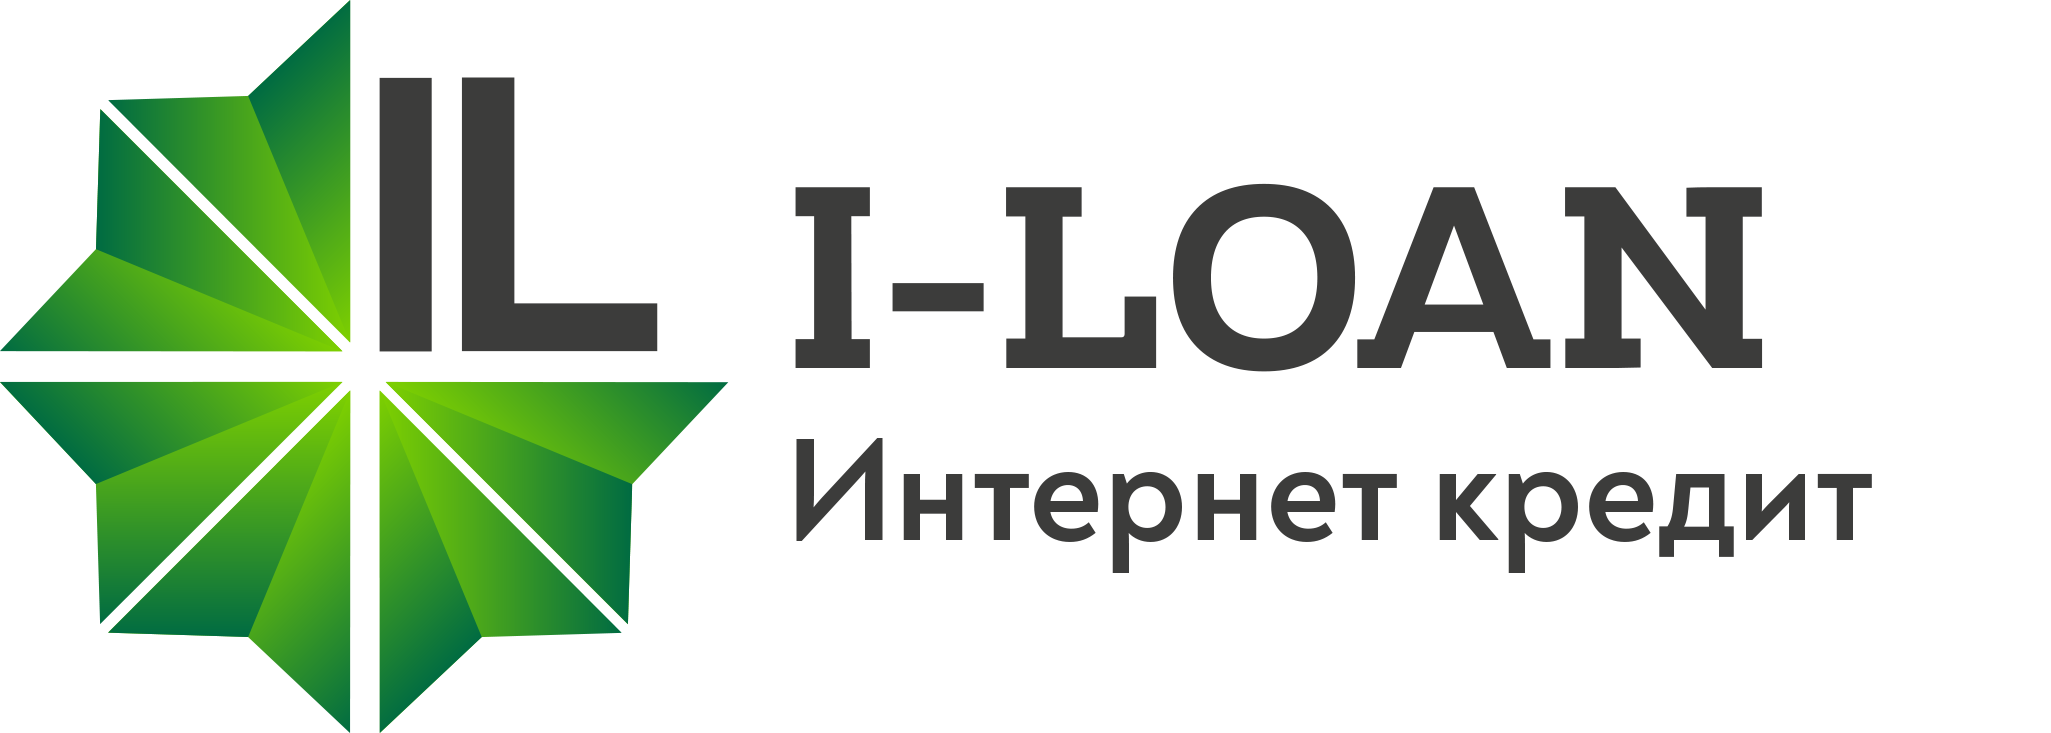 I-LOAN (Интернет кредит)